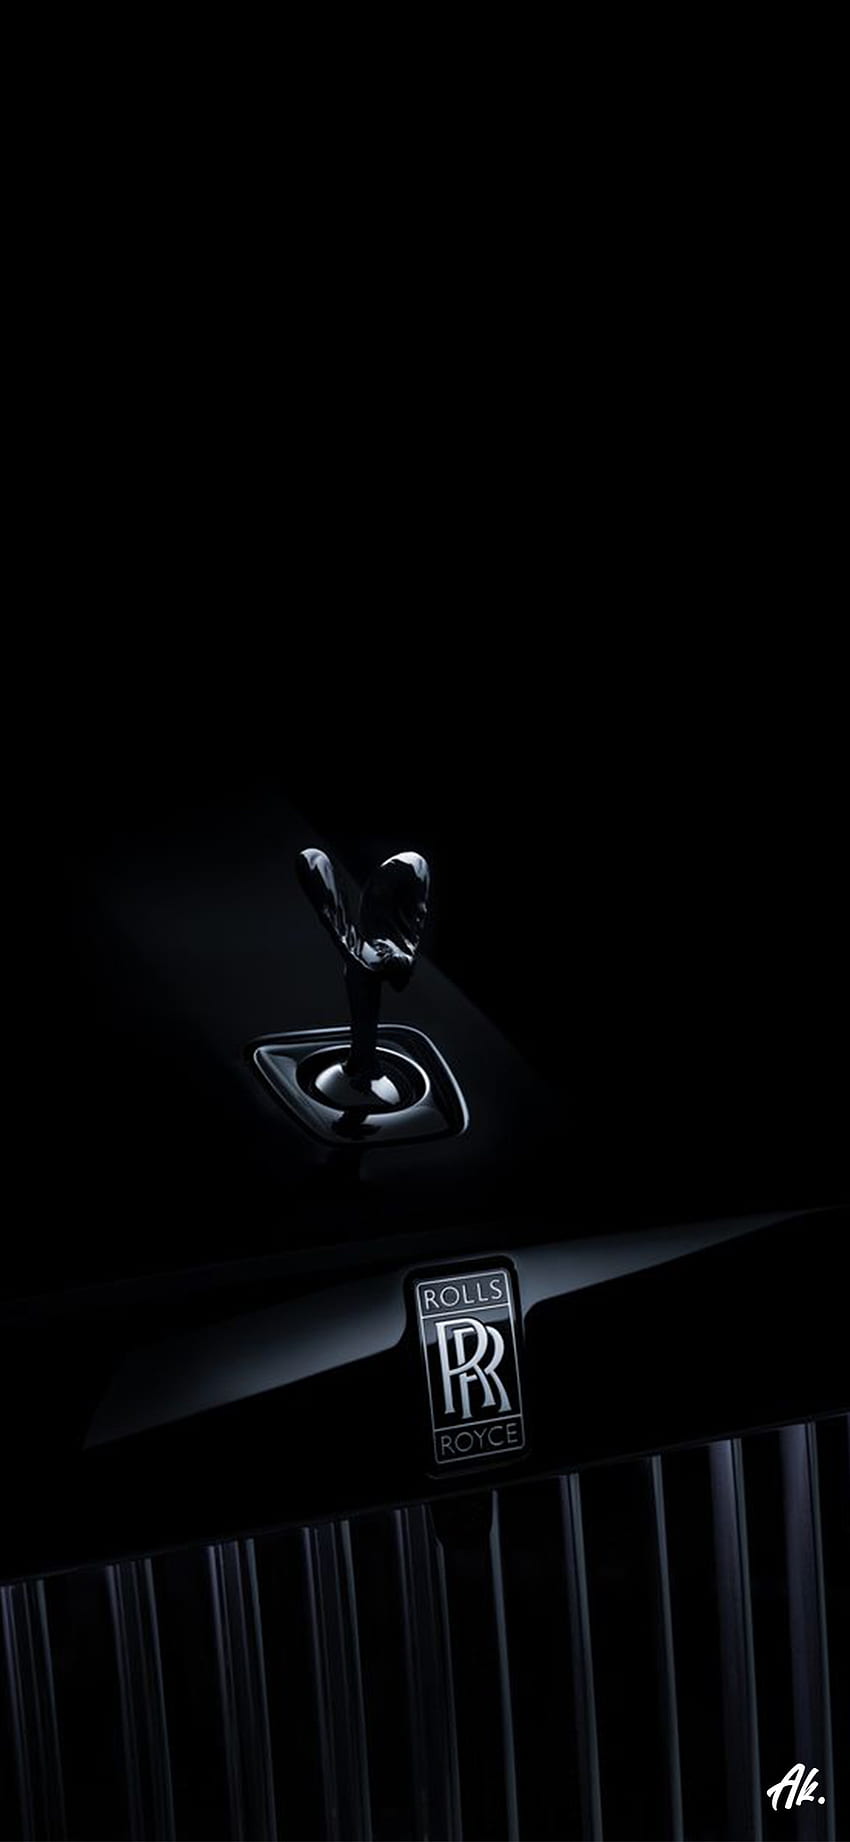 Rolls Royce logosu, otomotiv_dış, kişisel_lüks_araba, Rolls_Royce, araba, trend, siyah, karanlık, araç HD telefon duvar kağıdı